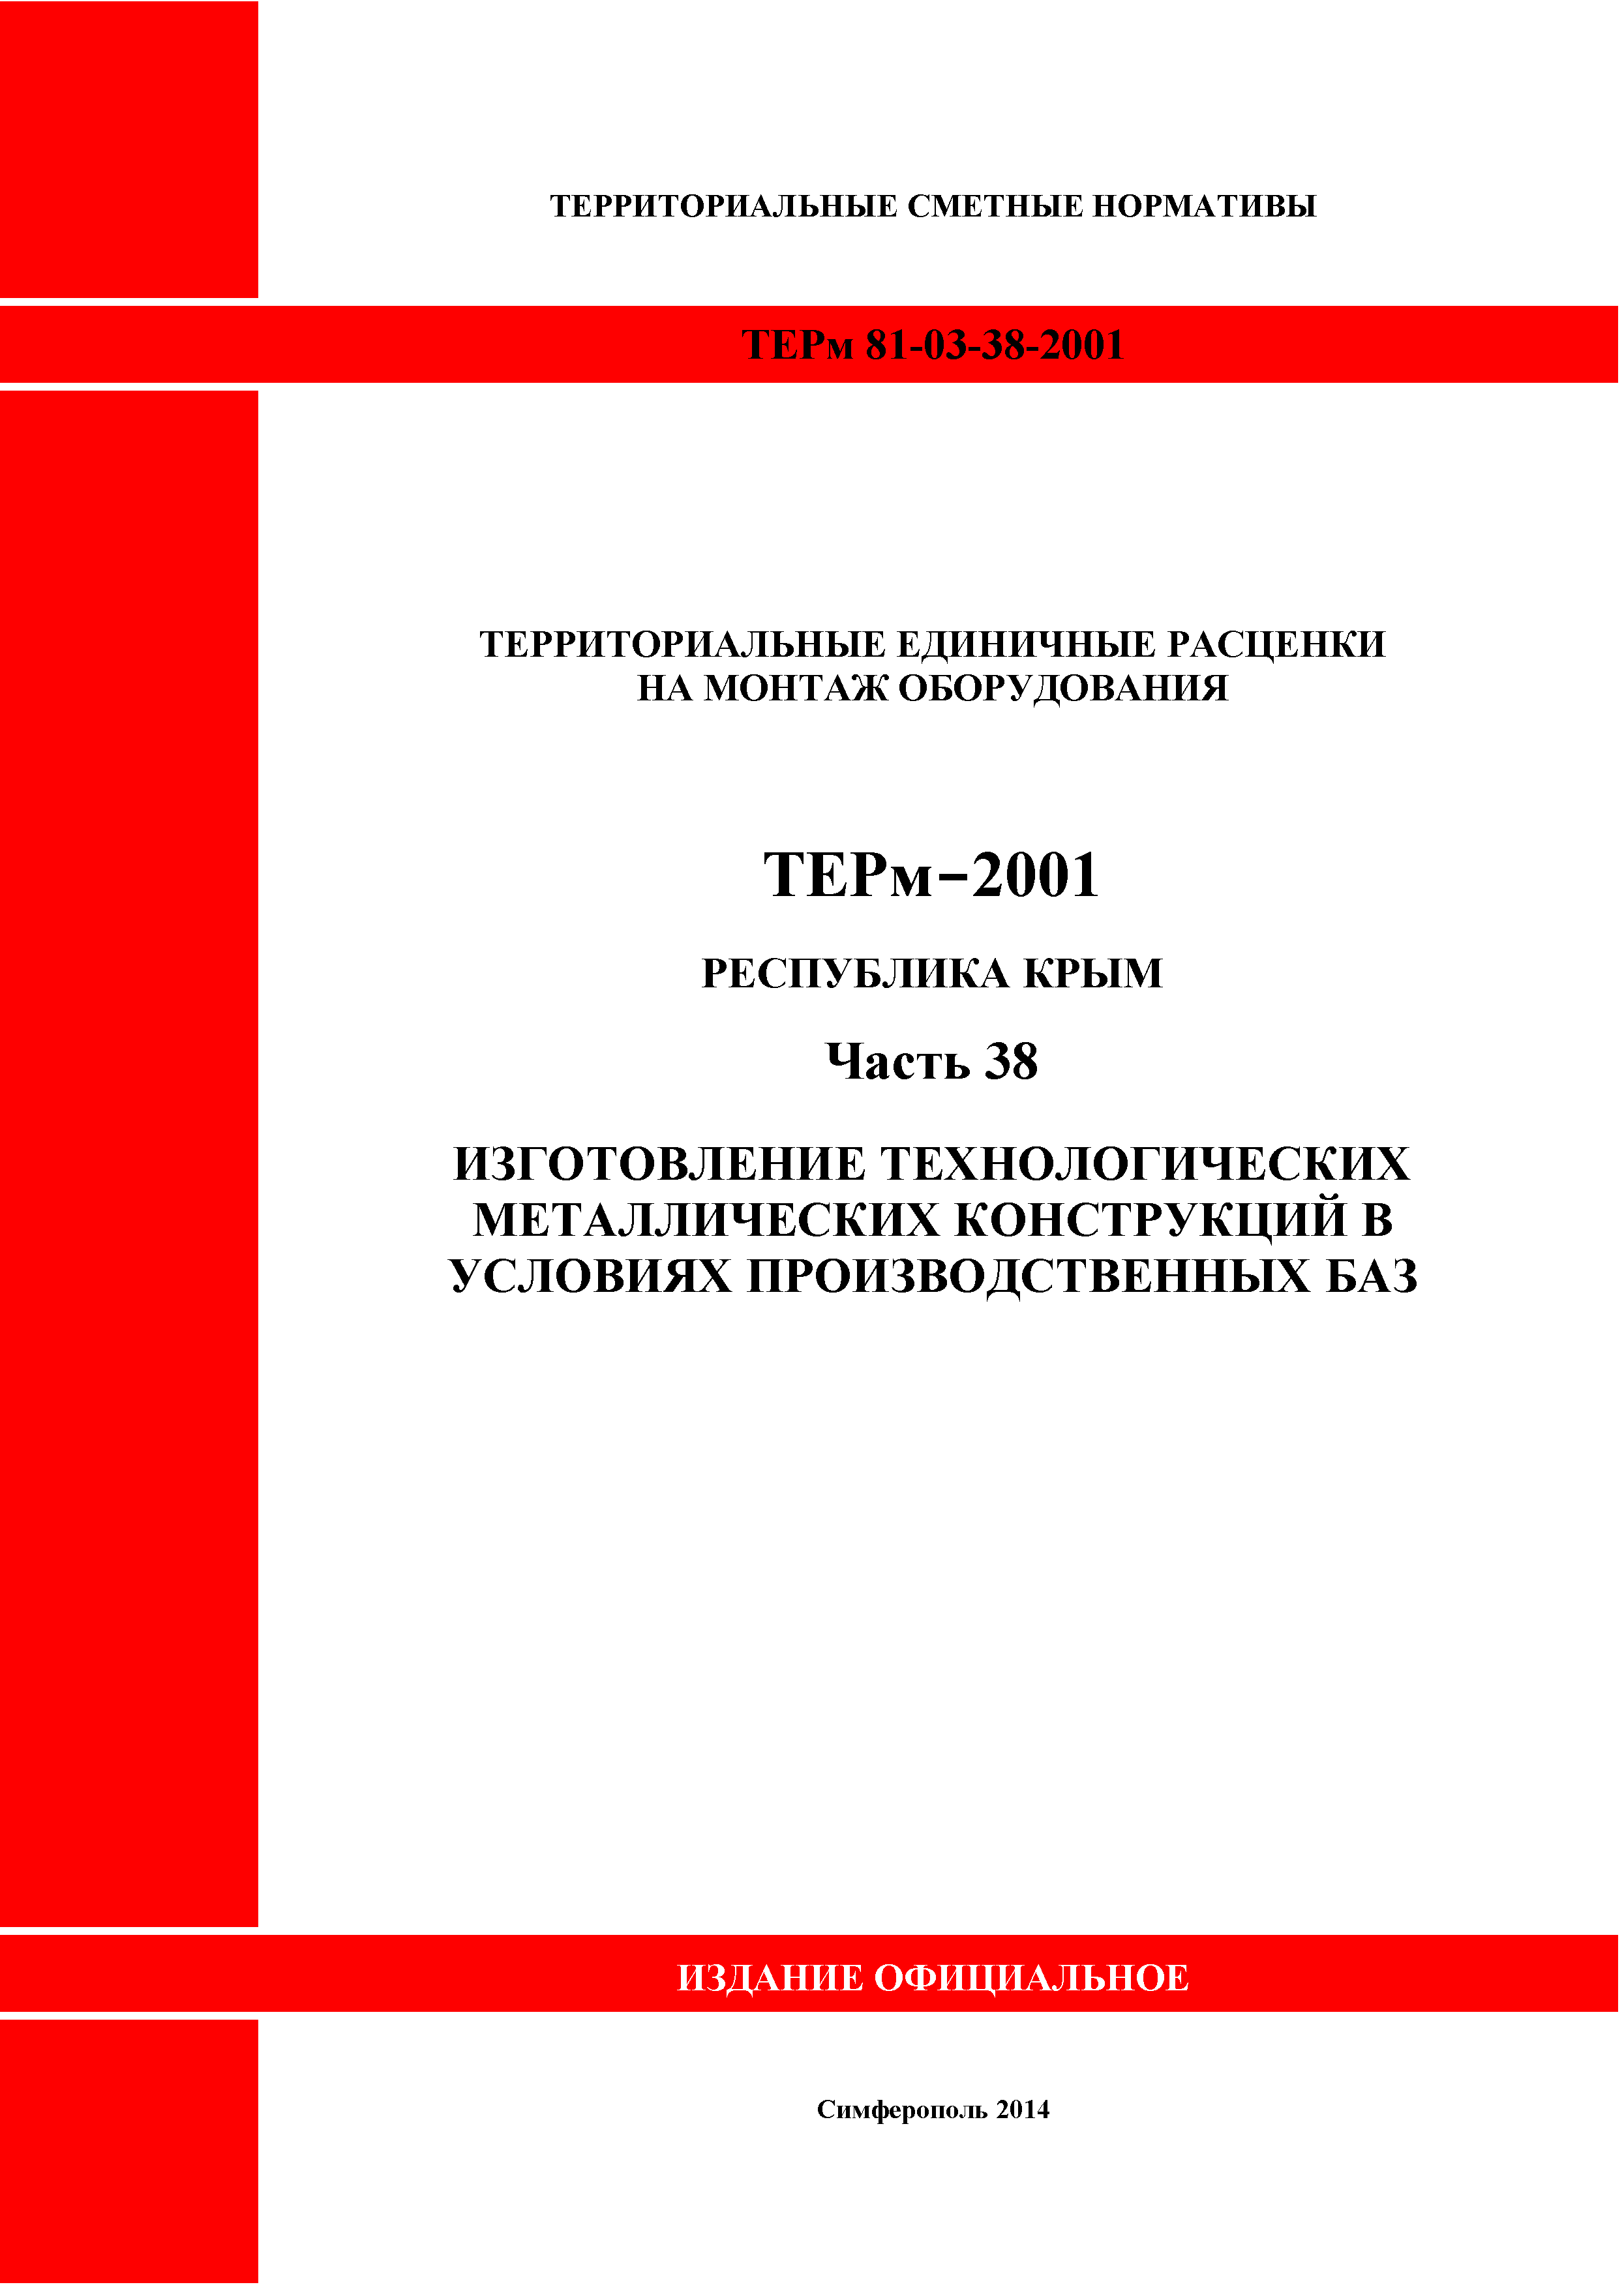 ТЕРм 2001 Республика Крым